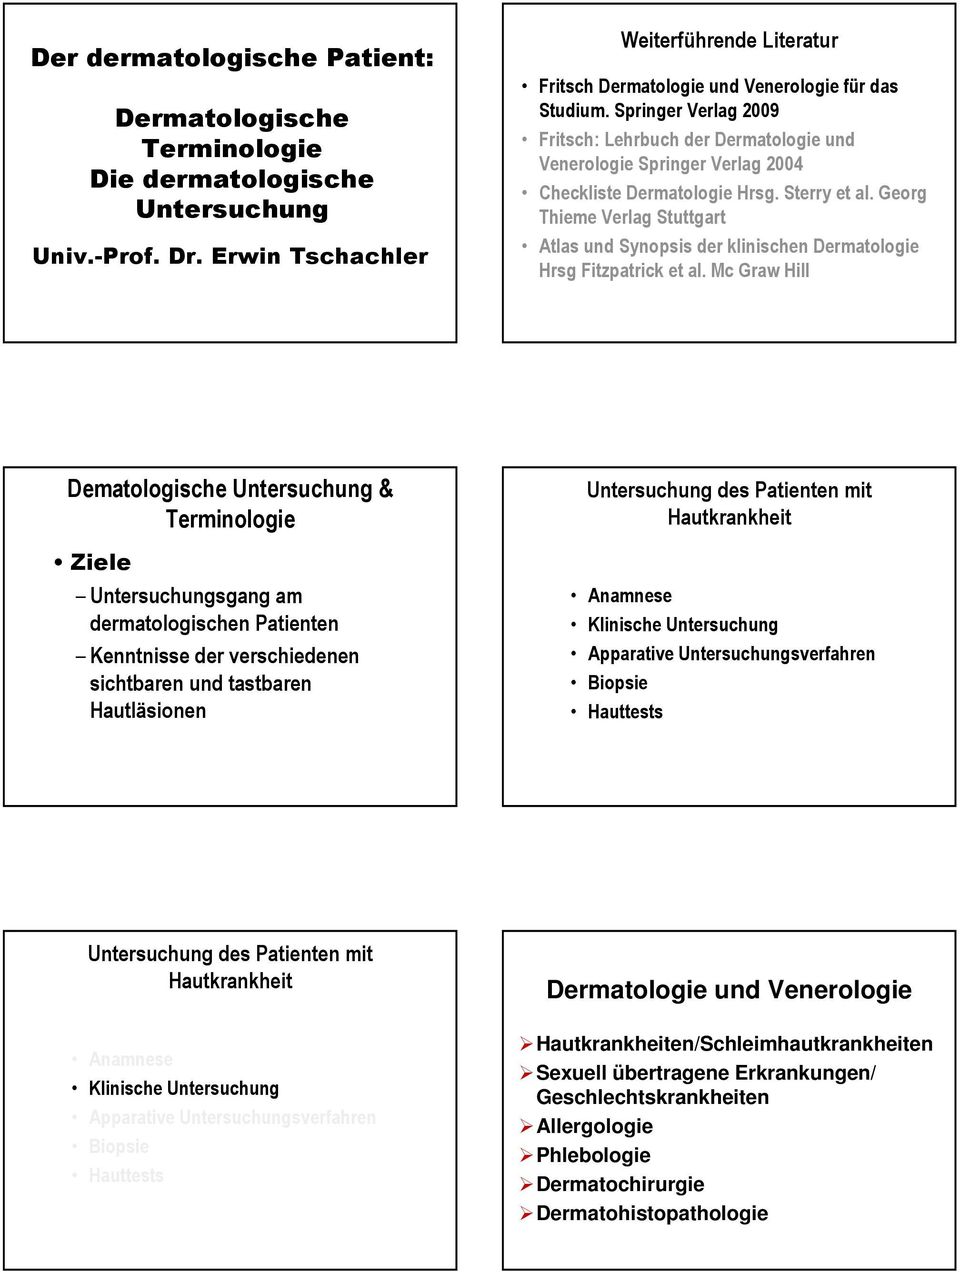 Springer Verlag 2009 Fritsch: Lehrbuch der Dermatologie und Venerologie Springer Verlag 2004 Checkliste Dermatologie Hrsg. Sterry et al.